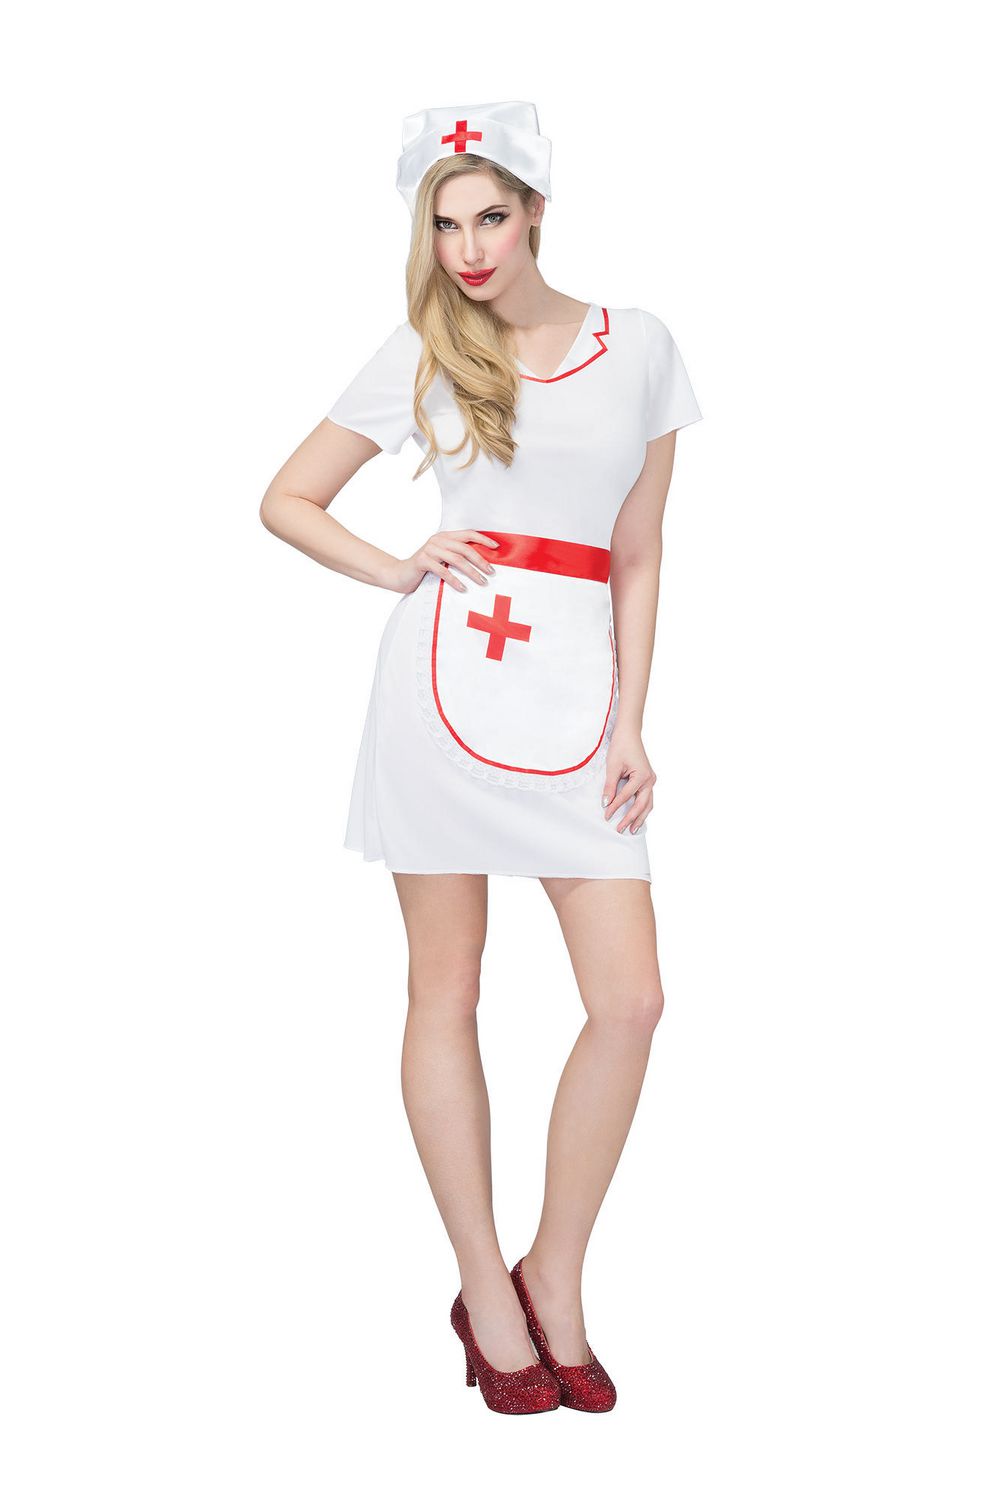 Filles Infirmière Infirmière Médical Uniforme Travail occupation Fancy Dress Costume Outfit 